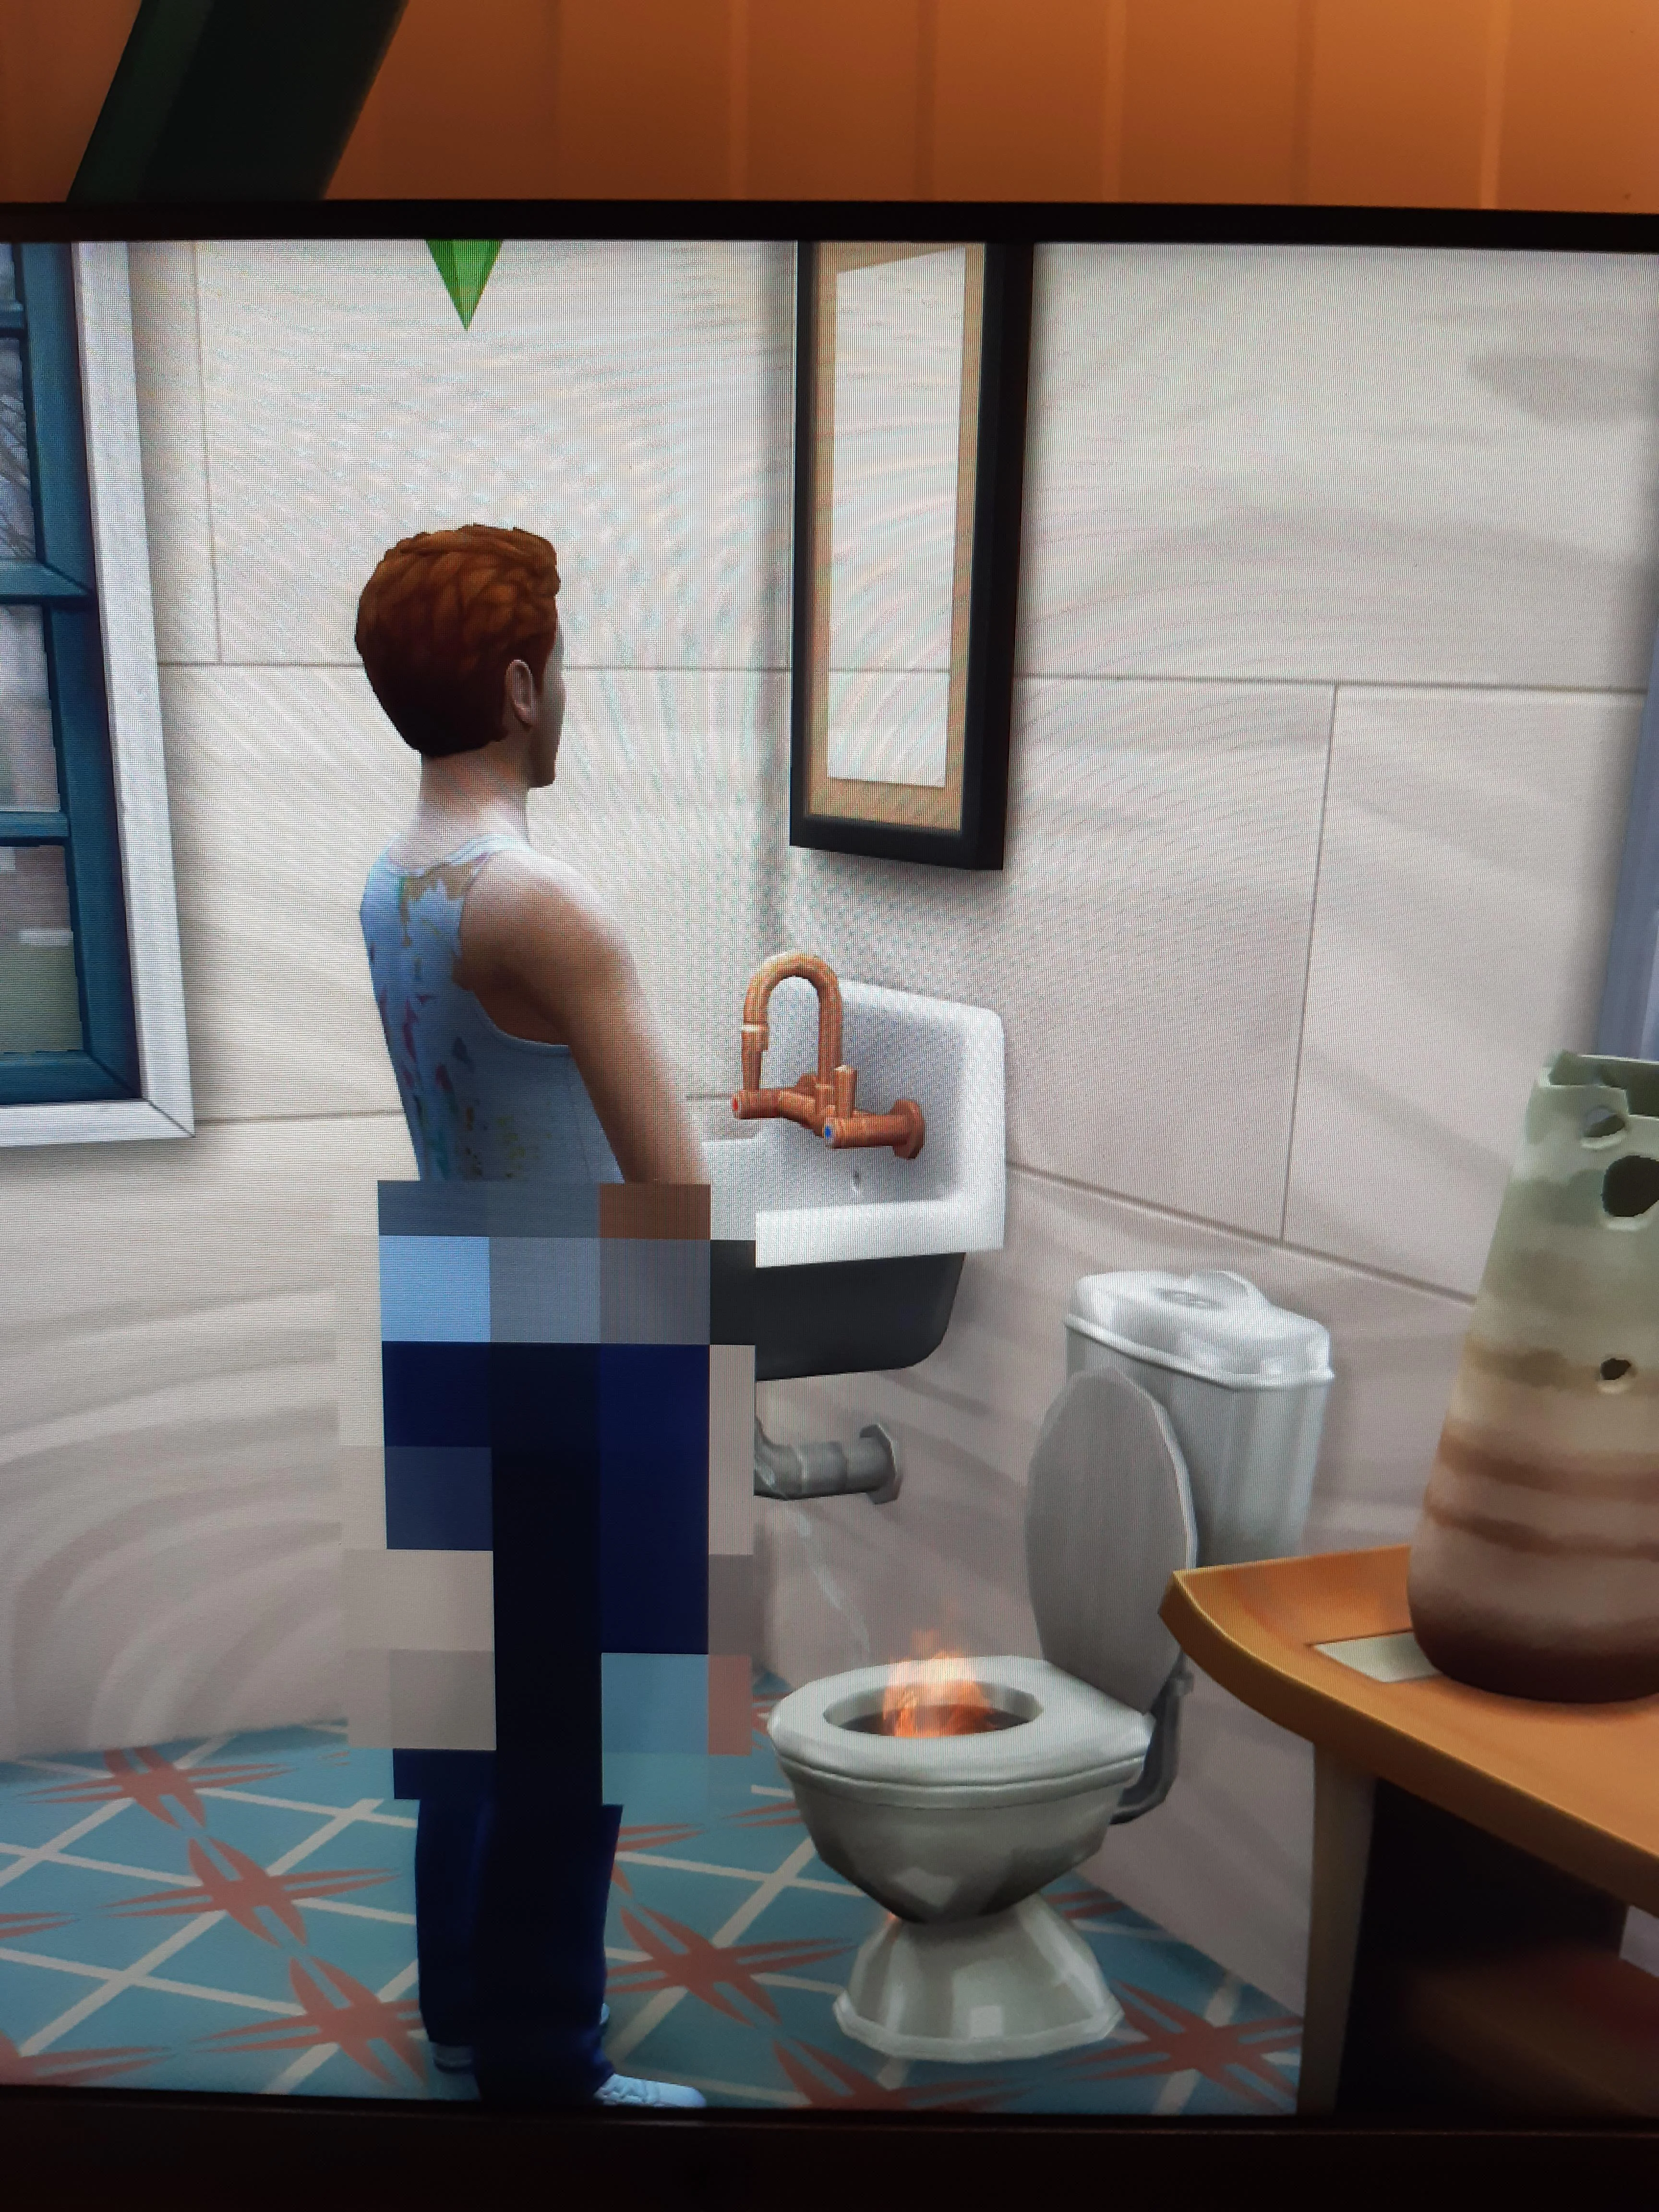 В The Sims 4 обнаружили забавный баг — персонажи начали мочиться пламенем - фото 1